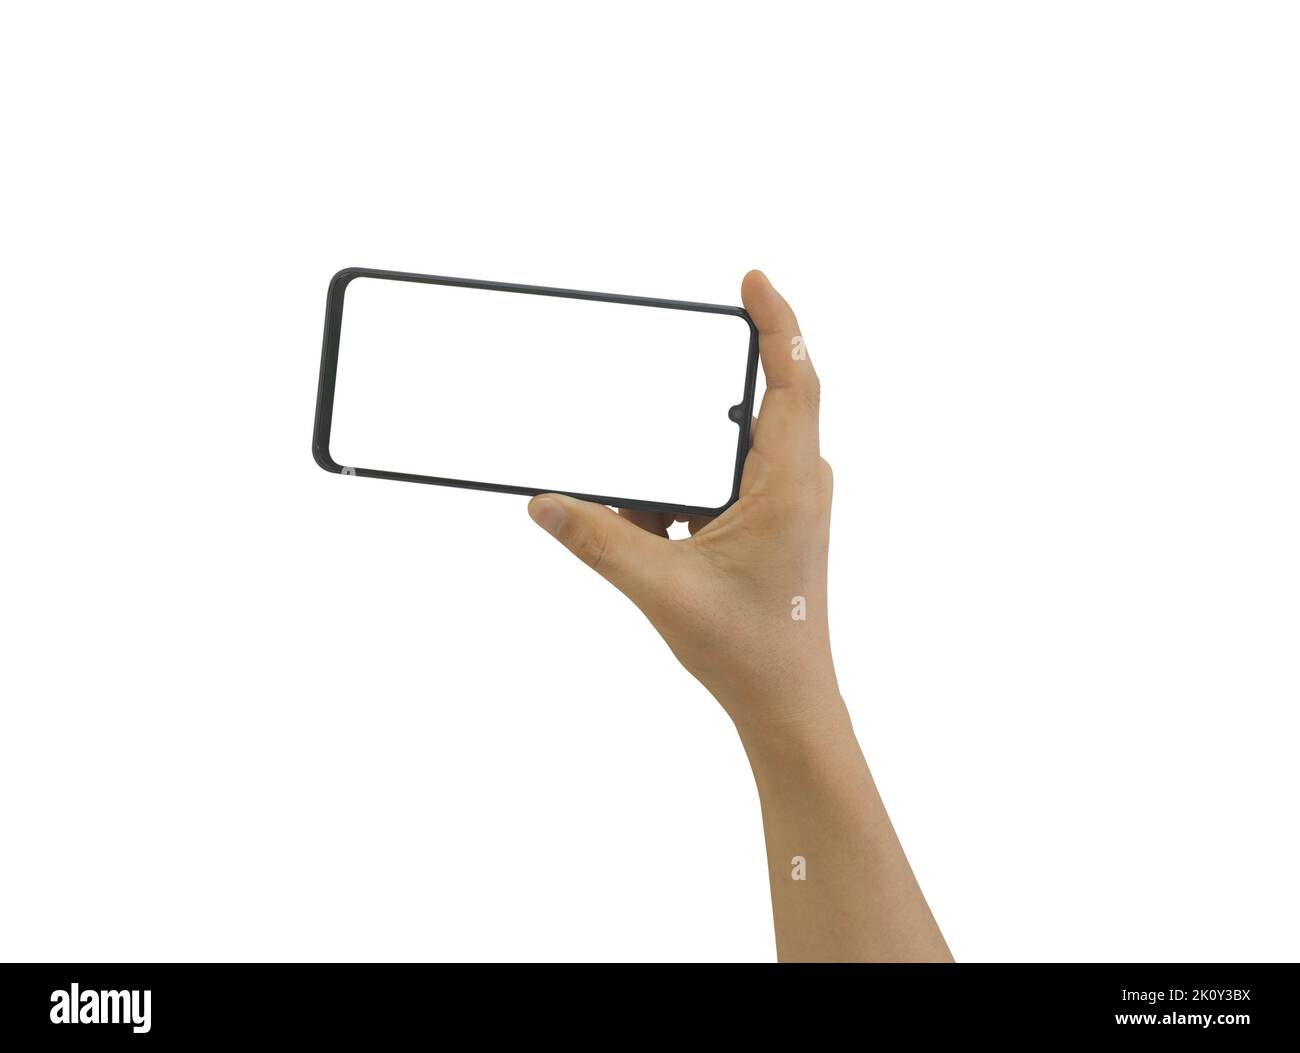 Männliche Hand hält Handy mit leerem Bildschirm isoliert auf weißem Hintergrund. Clipping-Pfad gehören Stockfoto